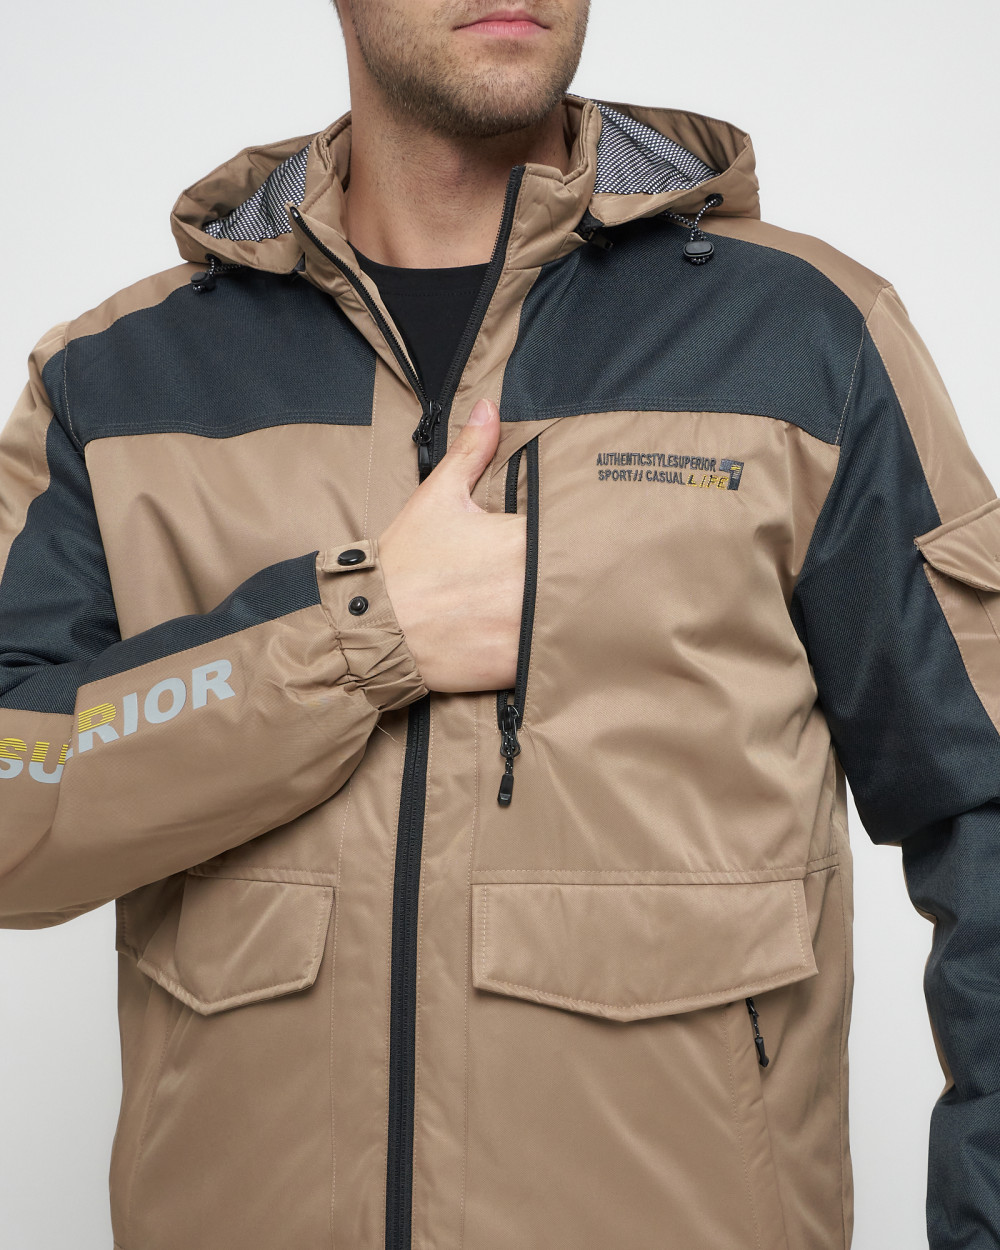 Купить куртку мужскую спортивную весеннюю оптом от производителя недорого в Москве 8816B 1